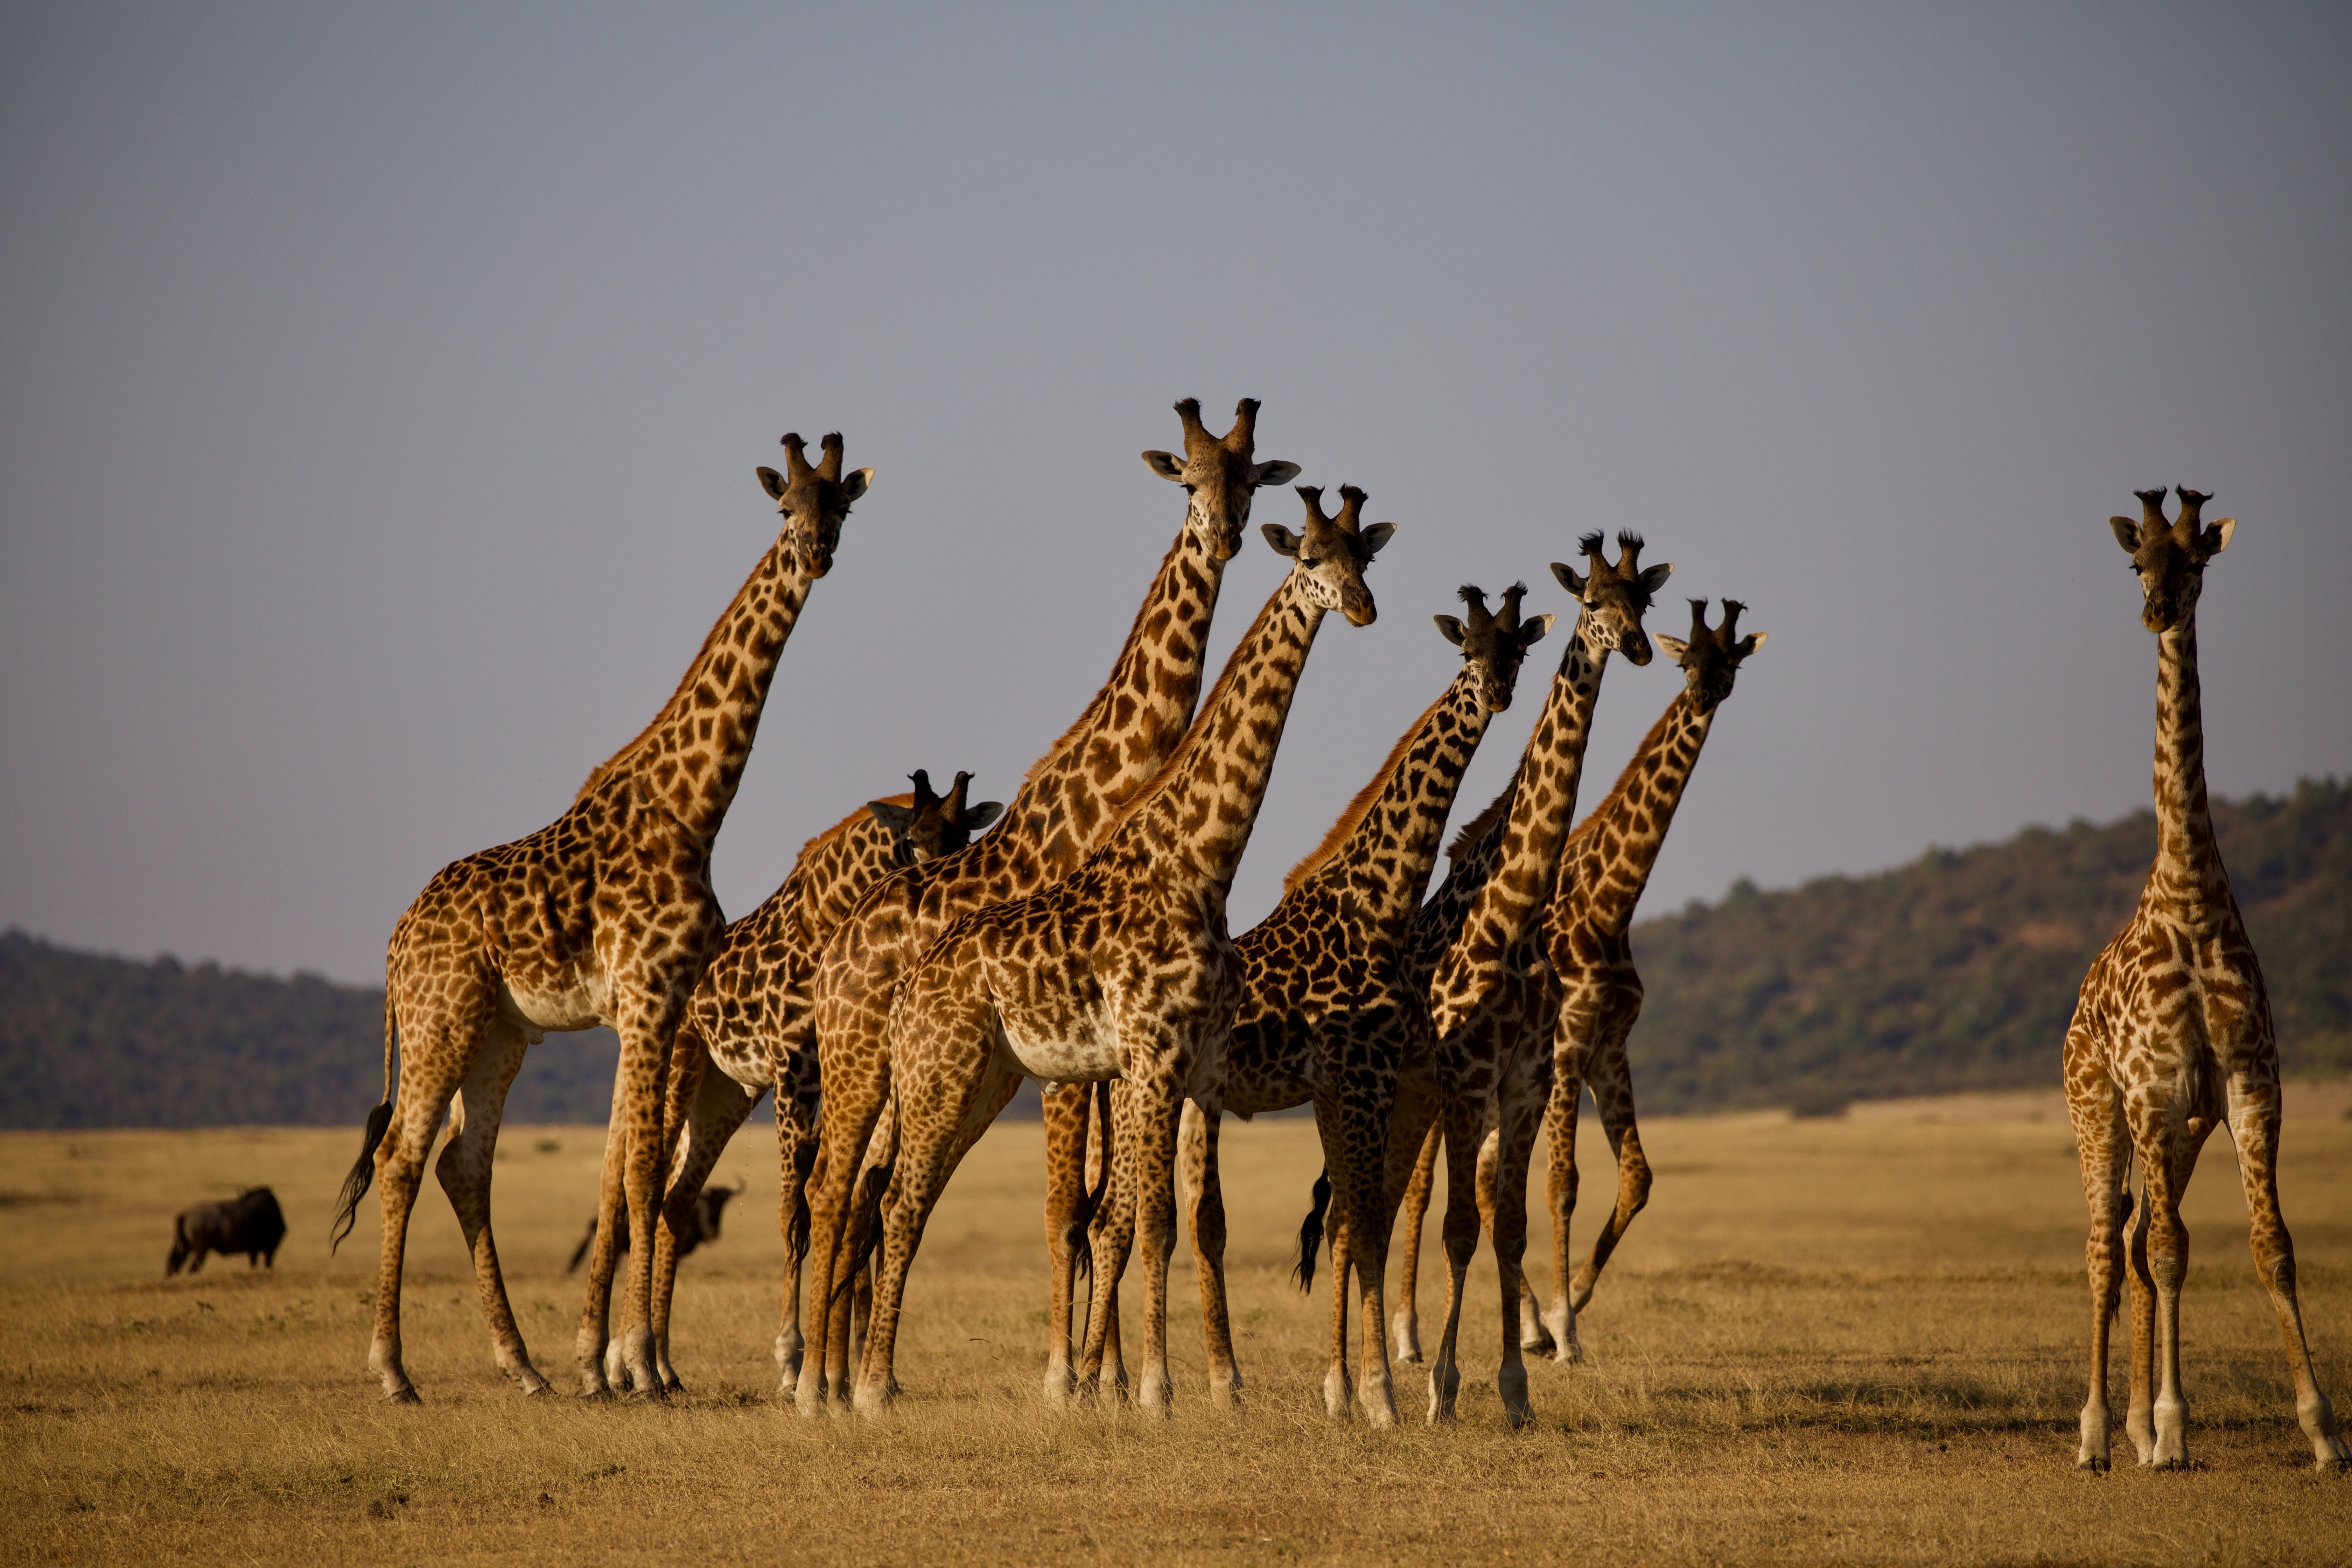 giraffes in wild during daytime